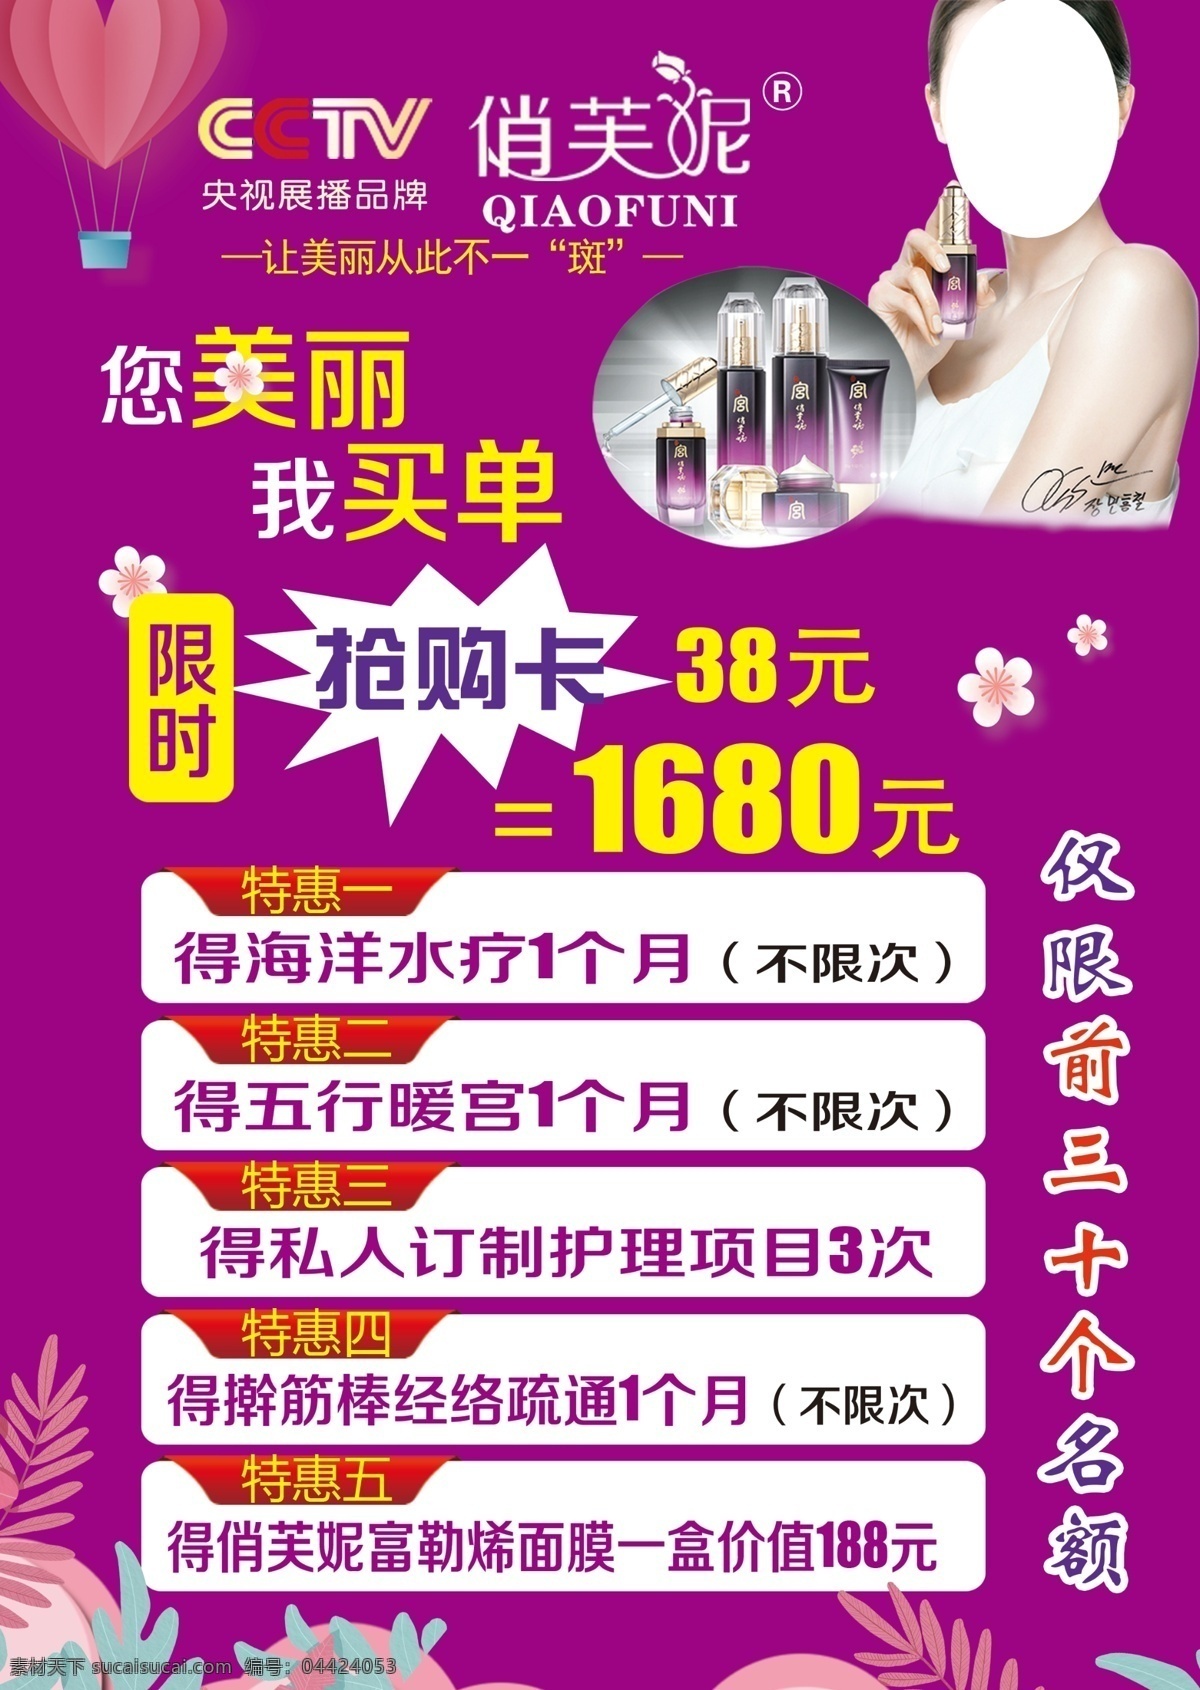 俏芙妮 美容 化妆品 紫色背景 化妆品海报